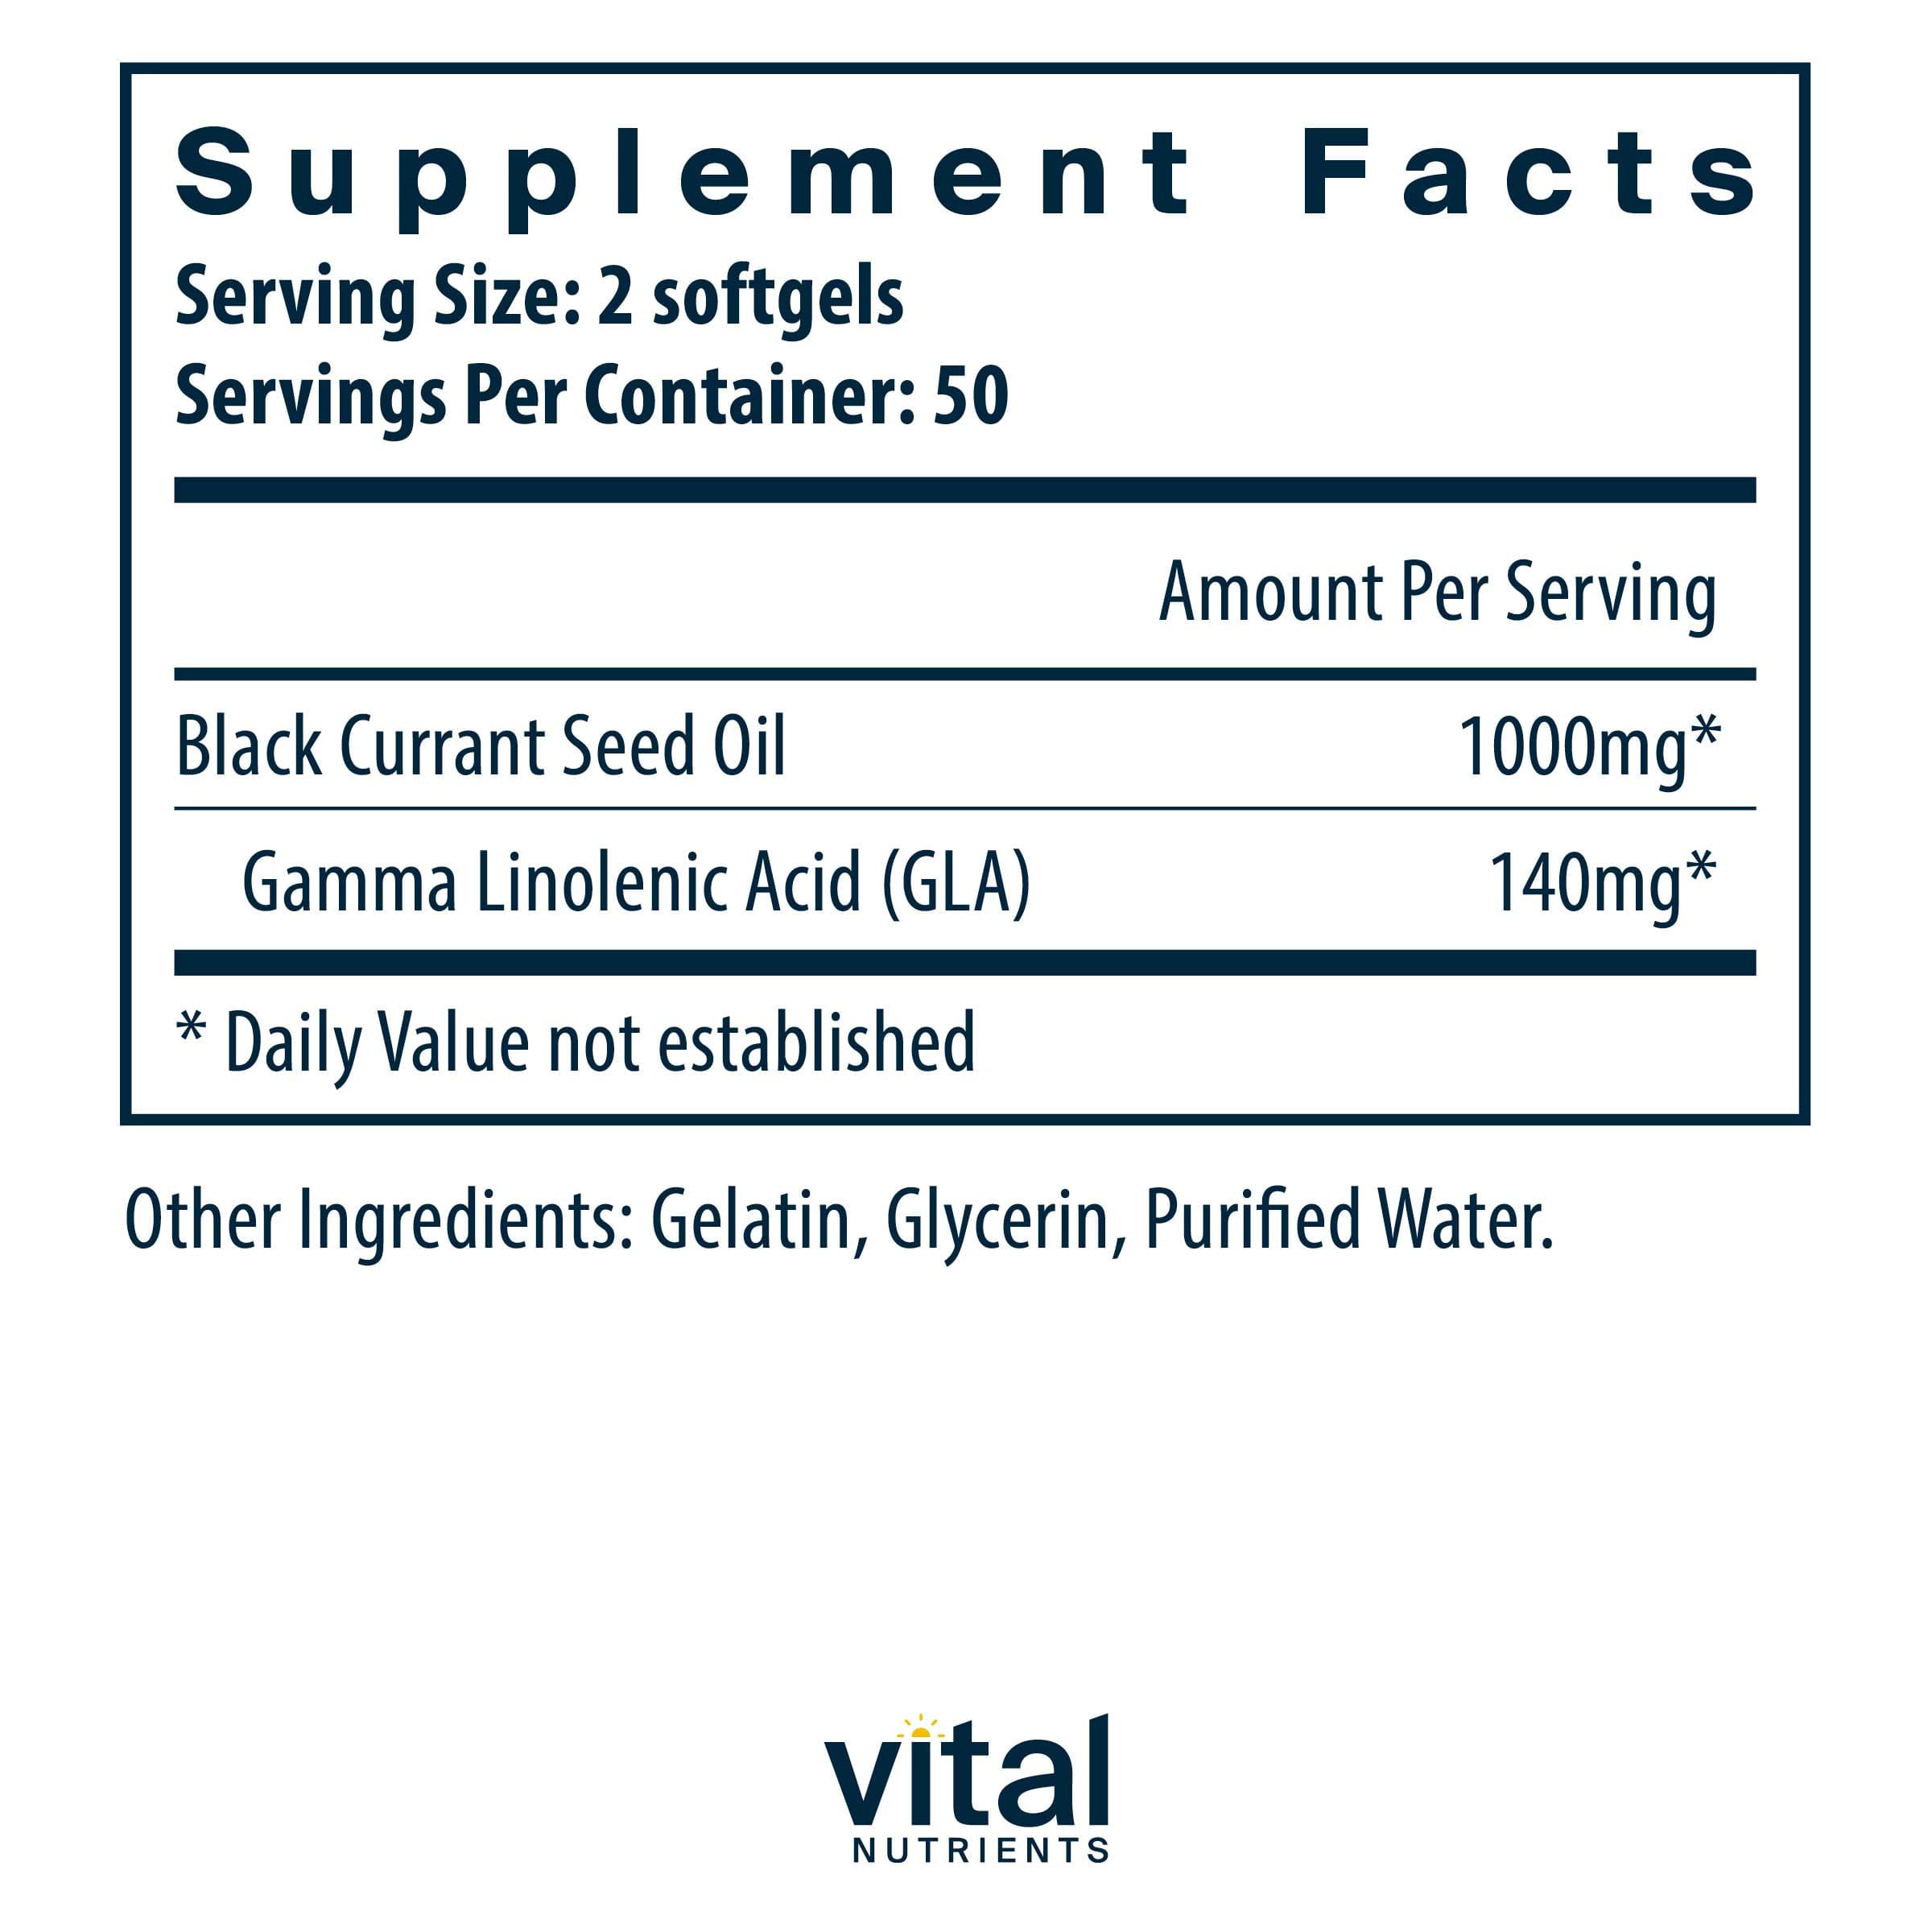 Vital Nutrients Black Currant Seed Oil Ingredients